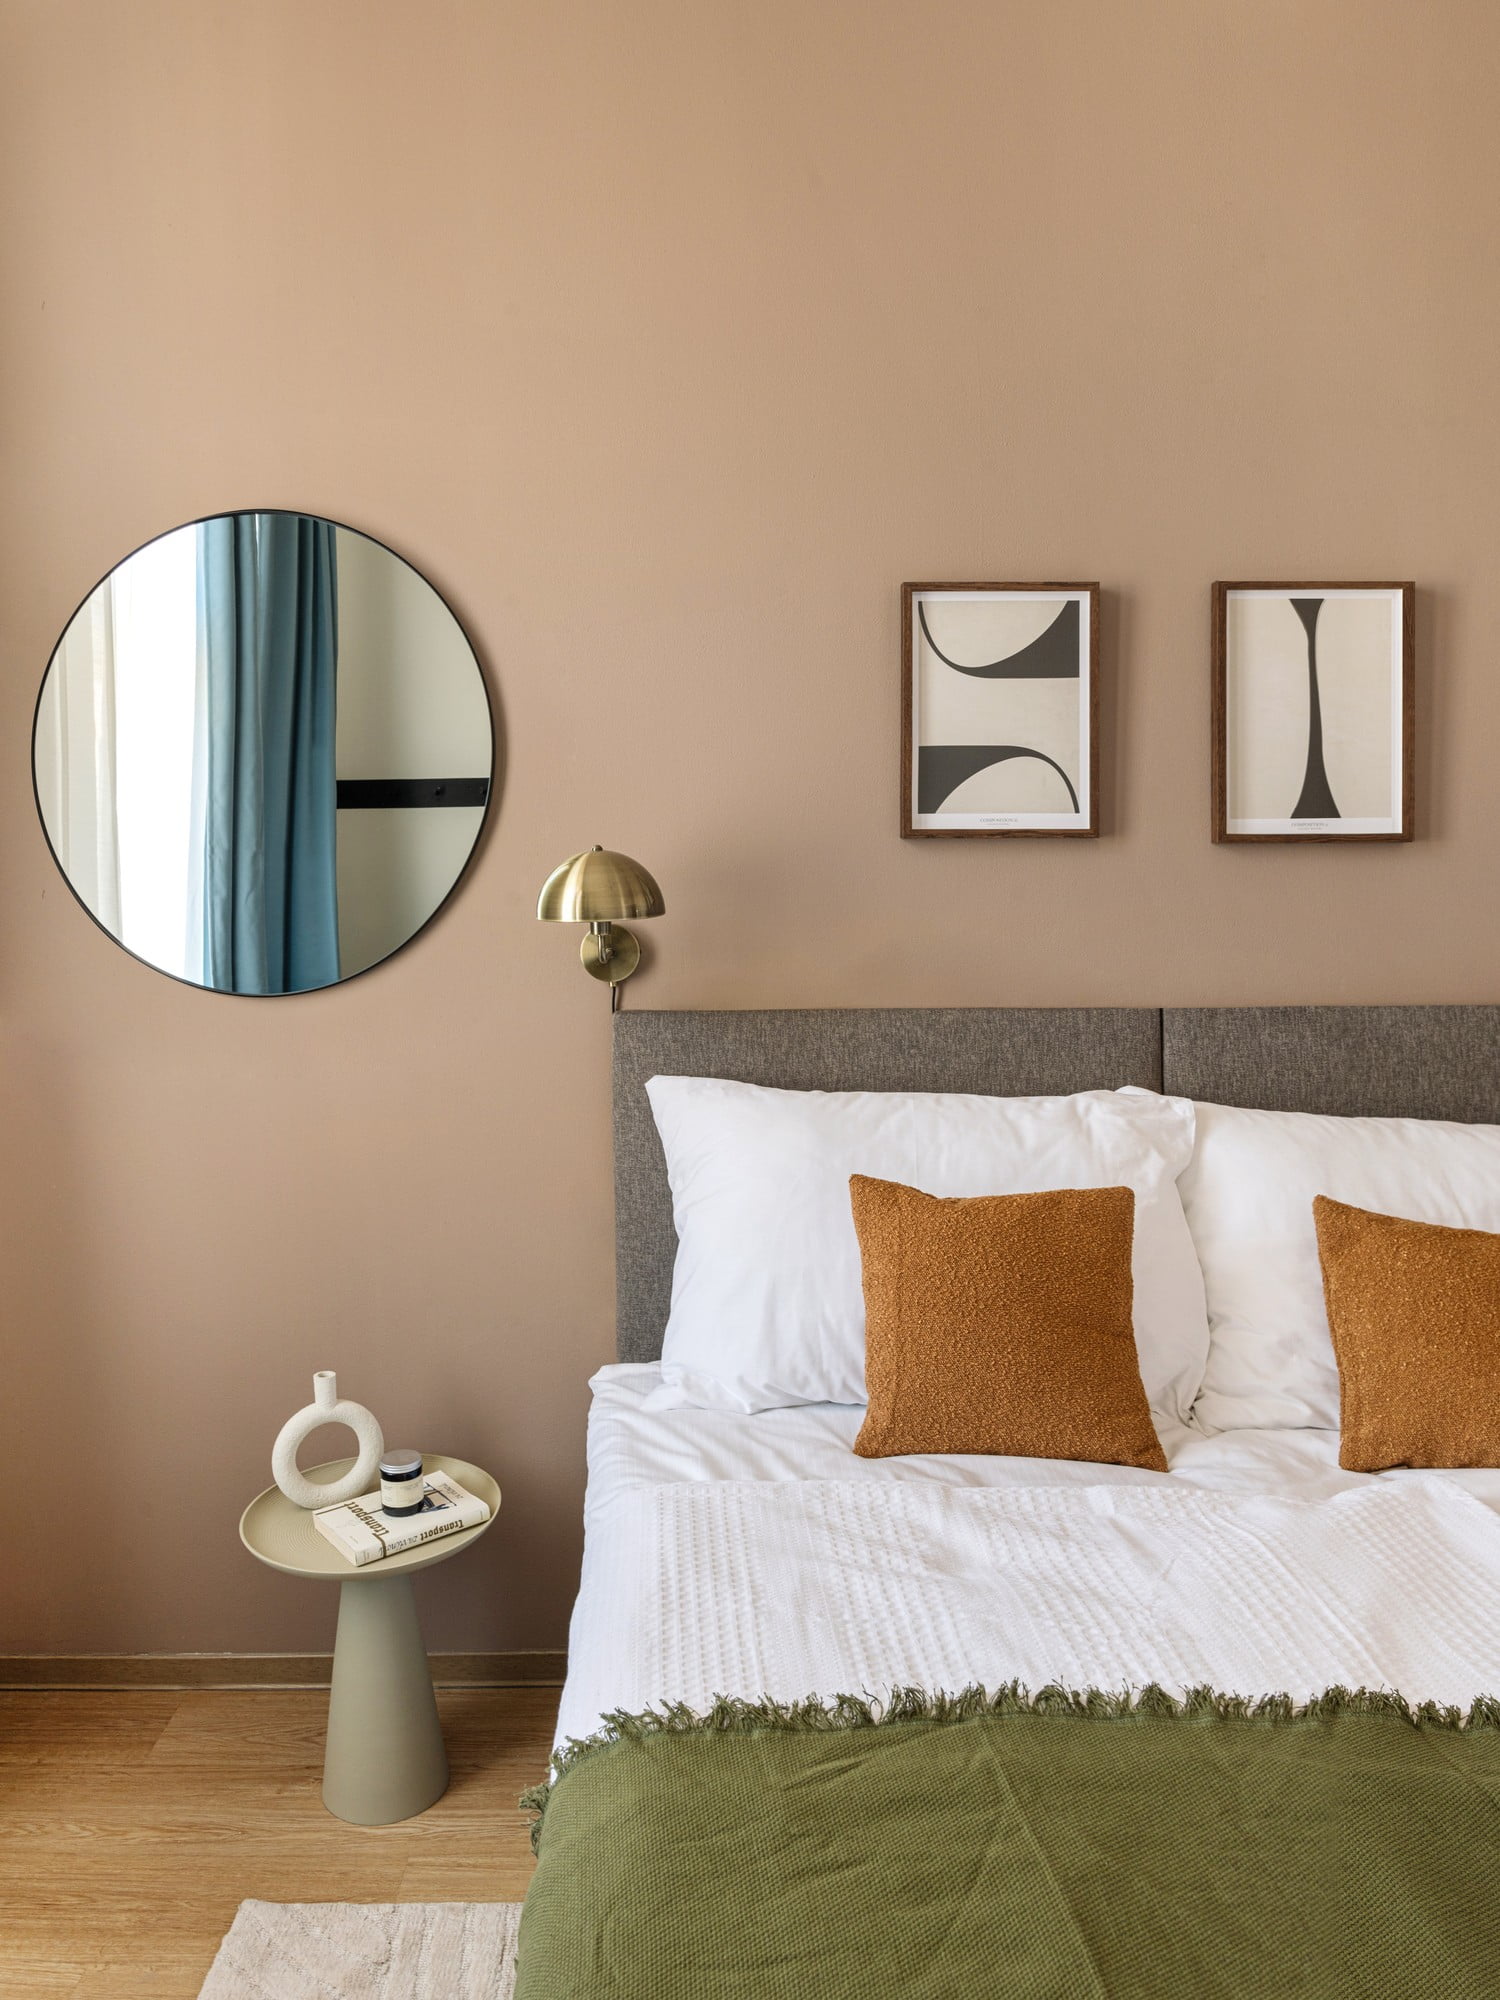 W nowoczesnej sypialni ważny jest wizualny spokój, który można osiągnąć wybierając meble o prostych liniach i bez zbędnych dekoracji.